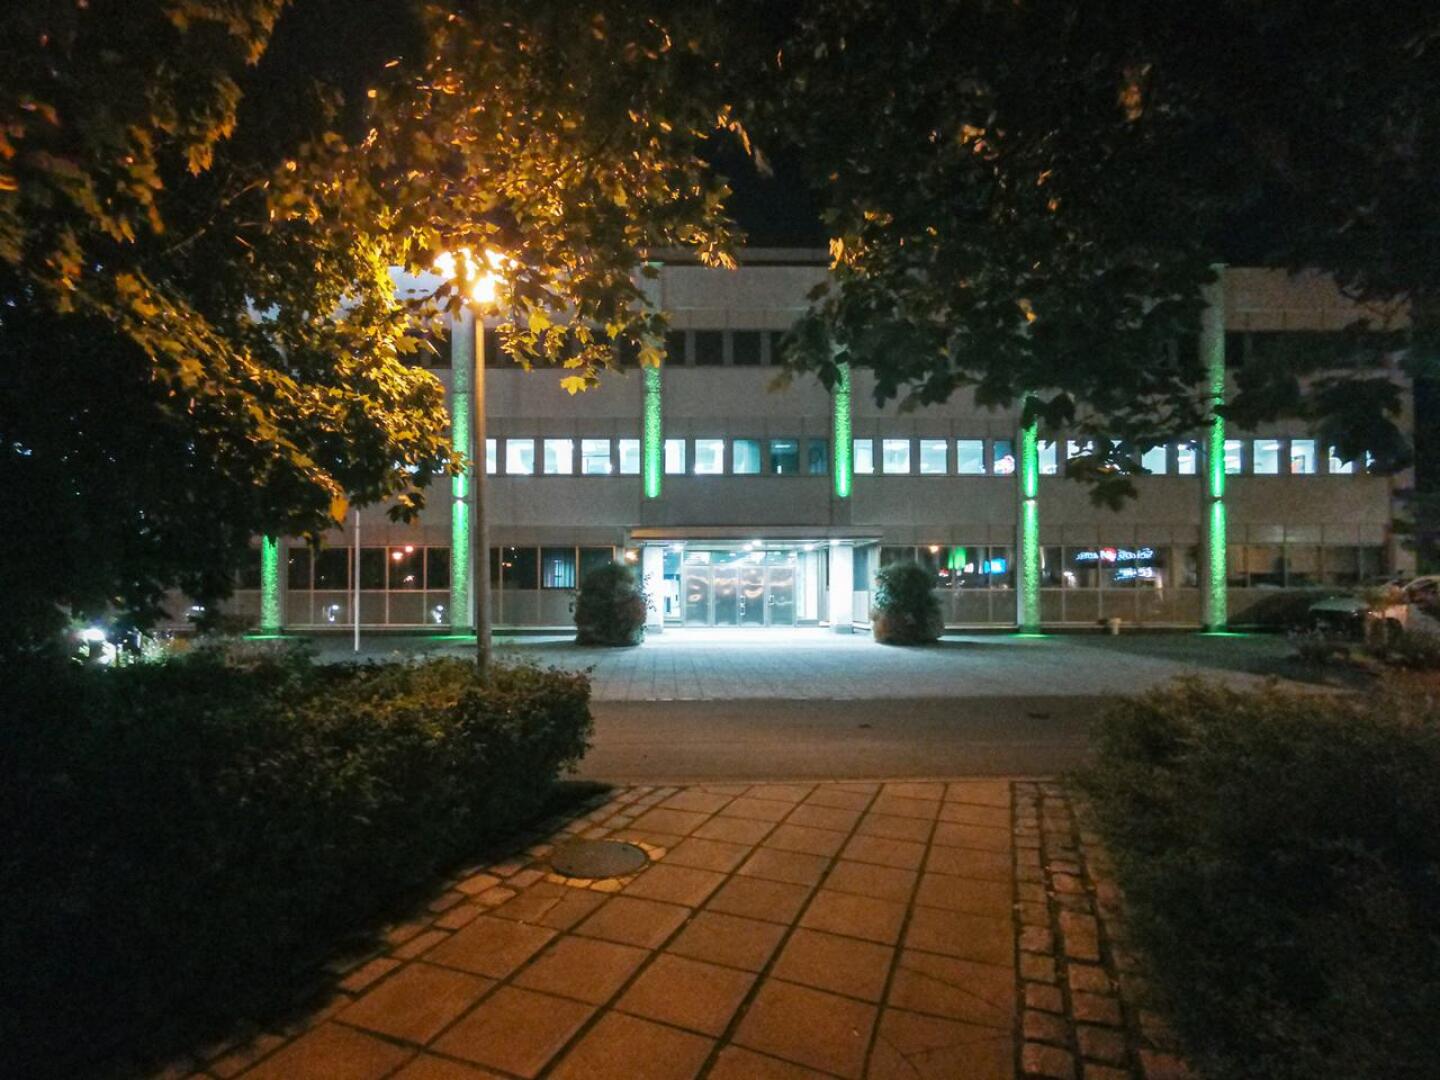 Kokkolan kaupungintalo vihreäksi valaistuna Mitokondriotautien viikon tapahtumasassa syksyllä 2020.